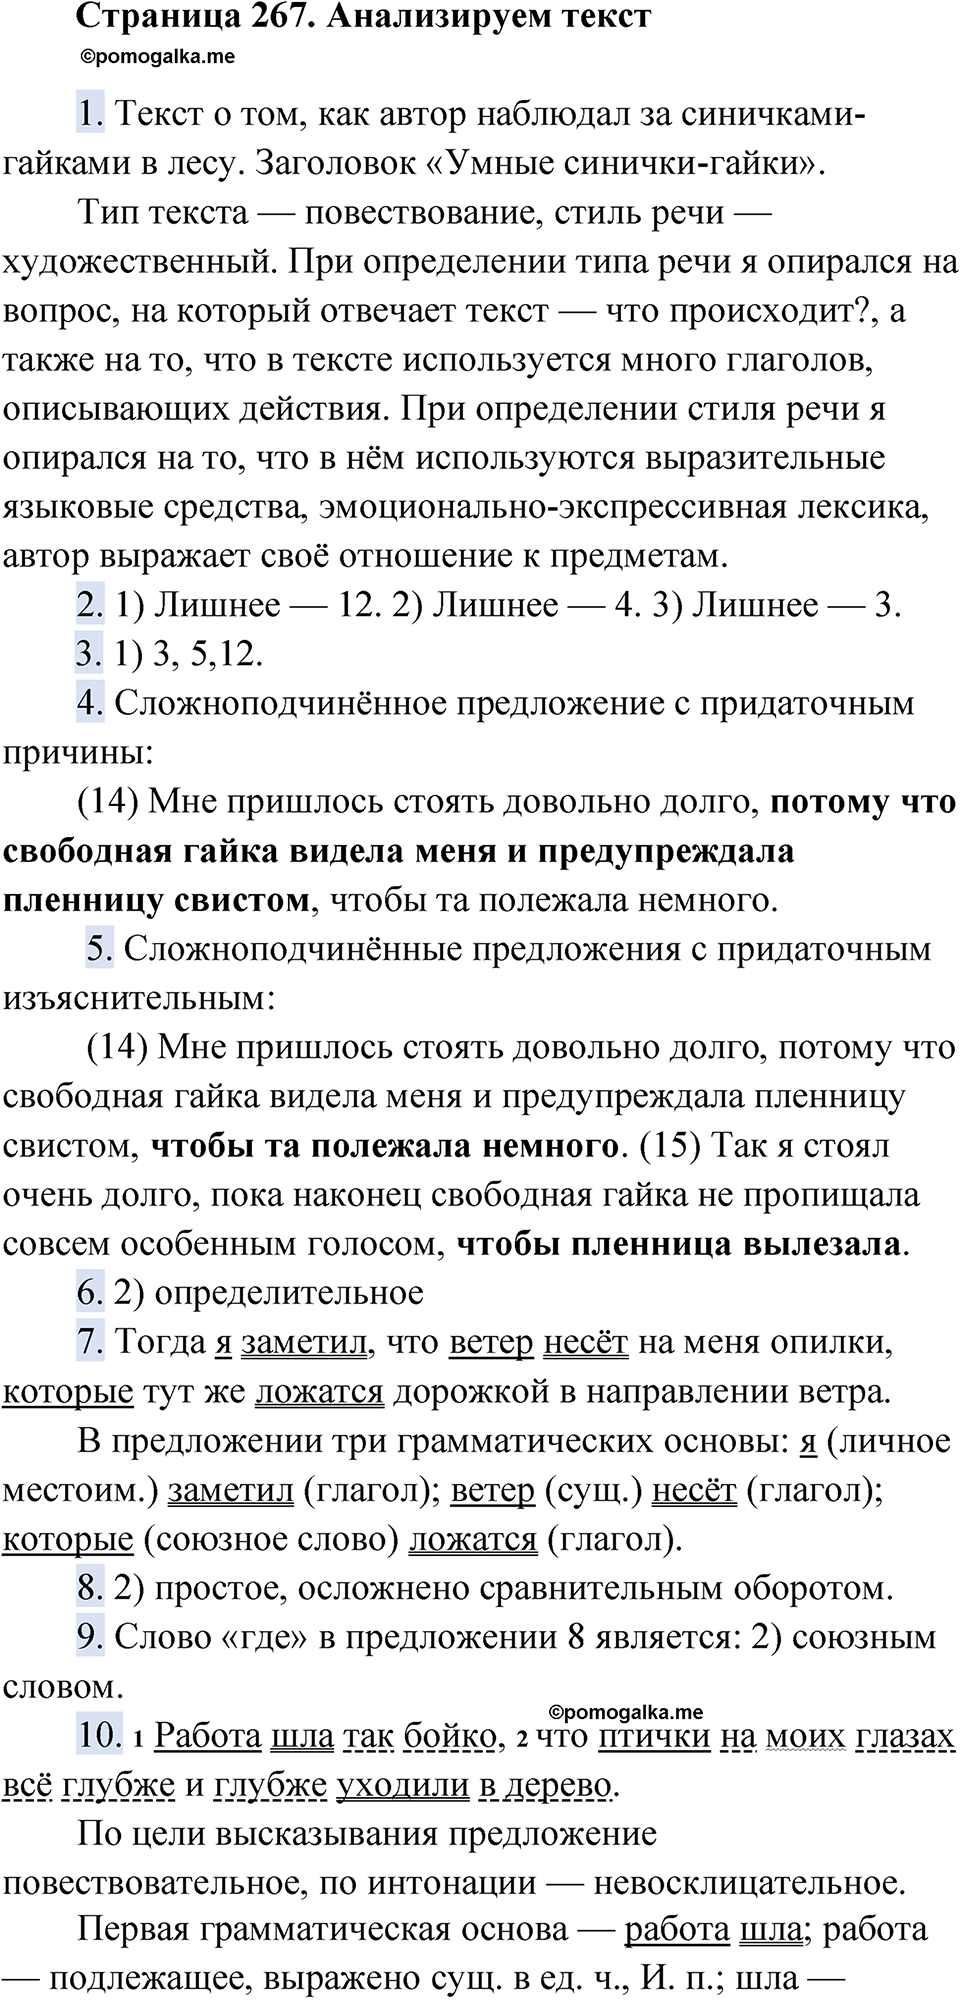 страница 267 Анализируем текст русский язык 9 класс Быстрова 1 часть 2022 год